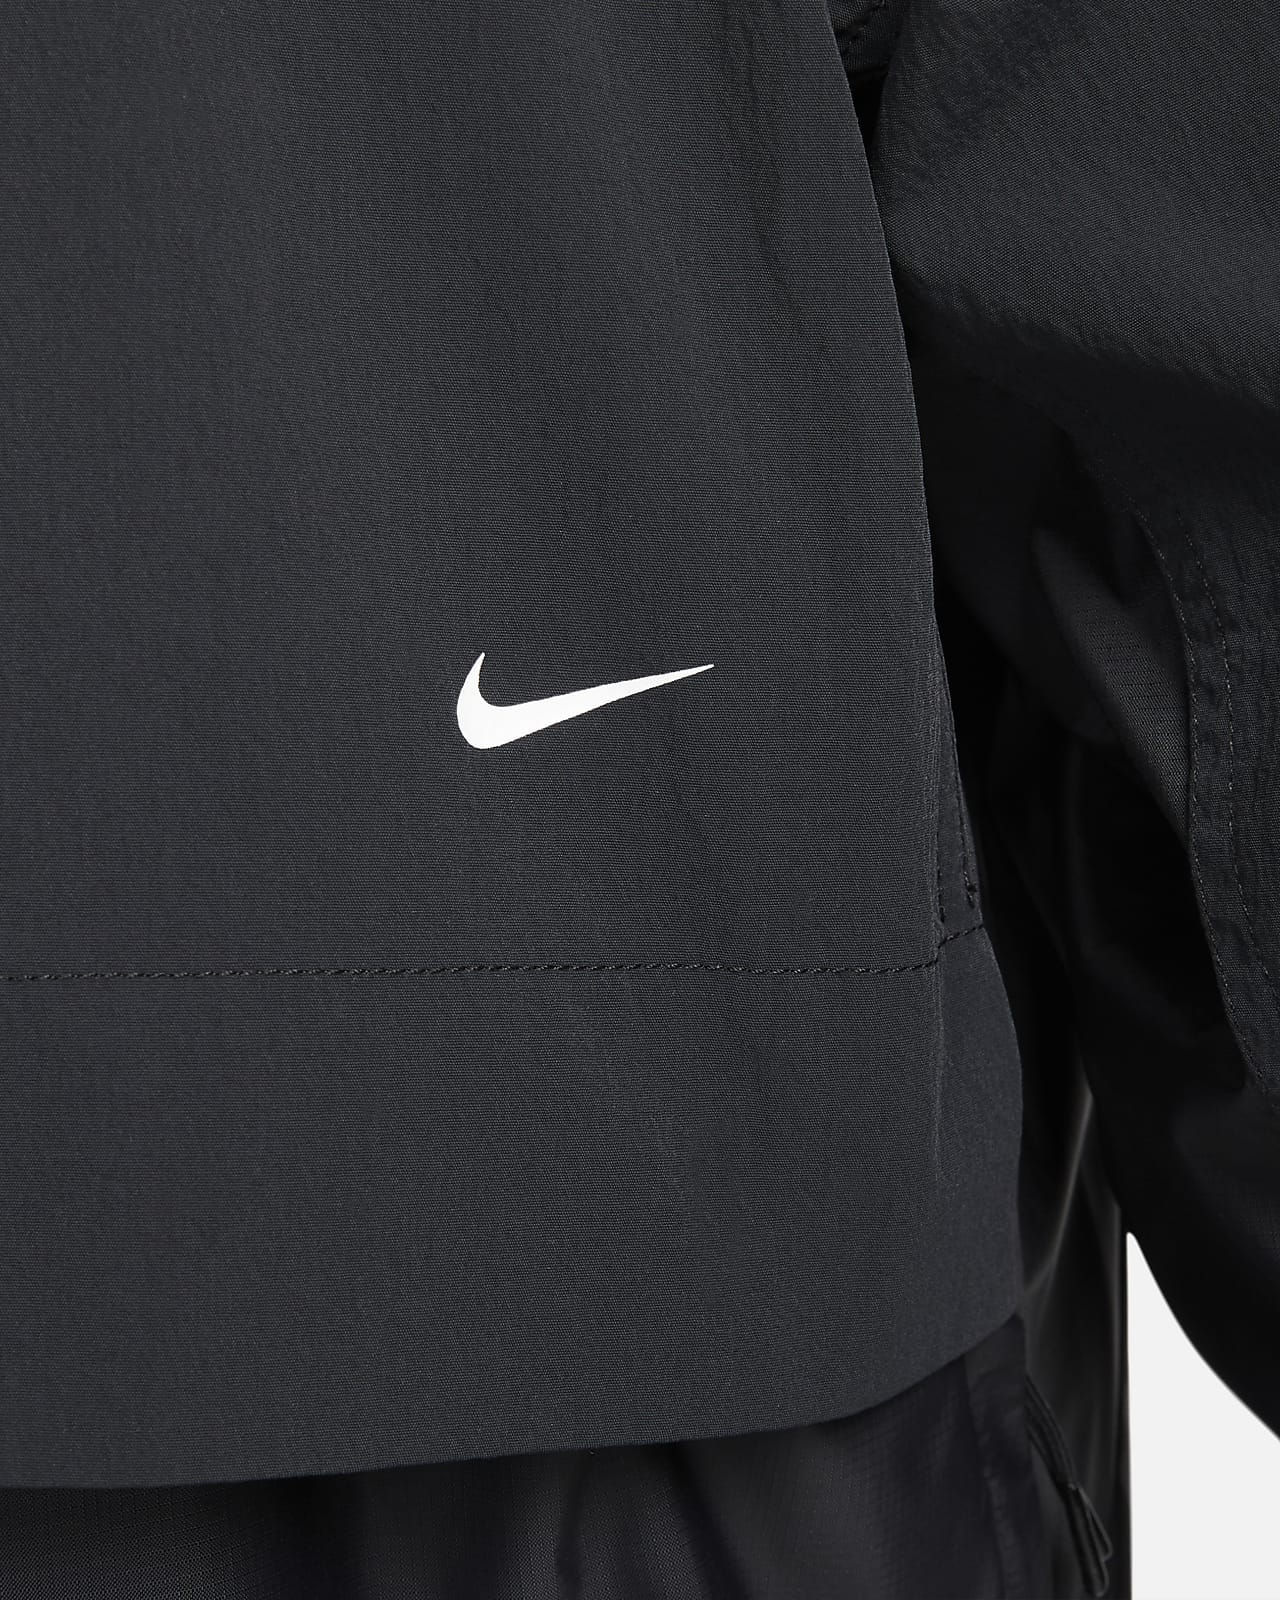 Nike ADV Men's Jacket. Nike.com